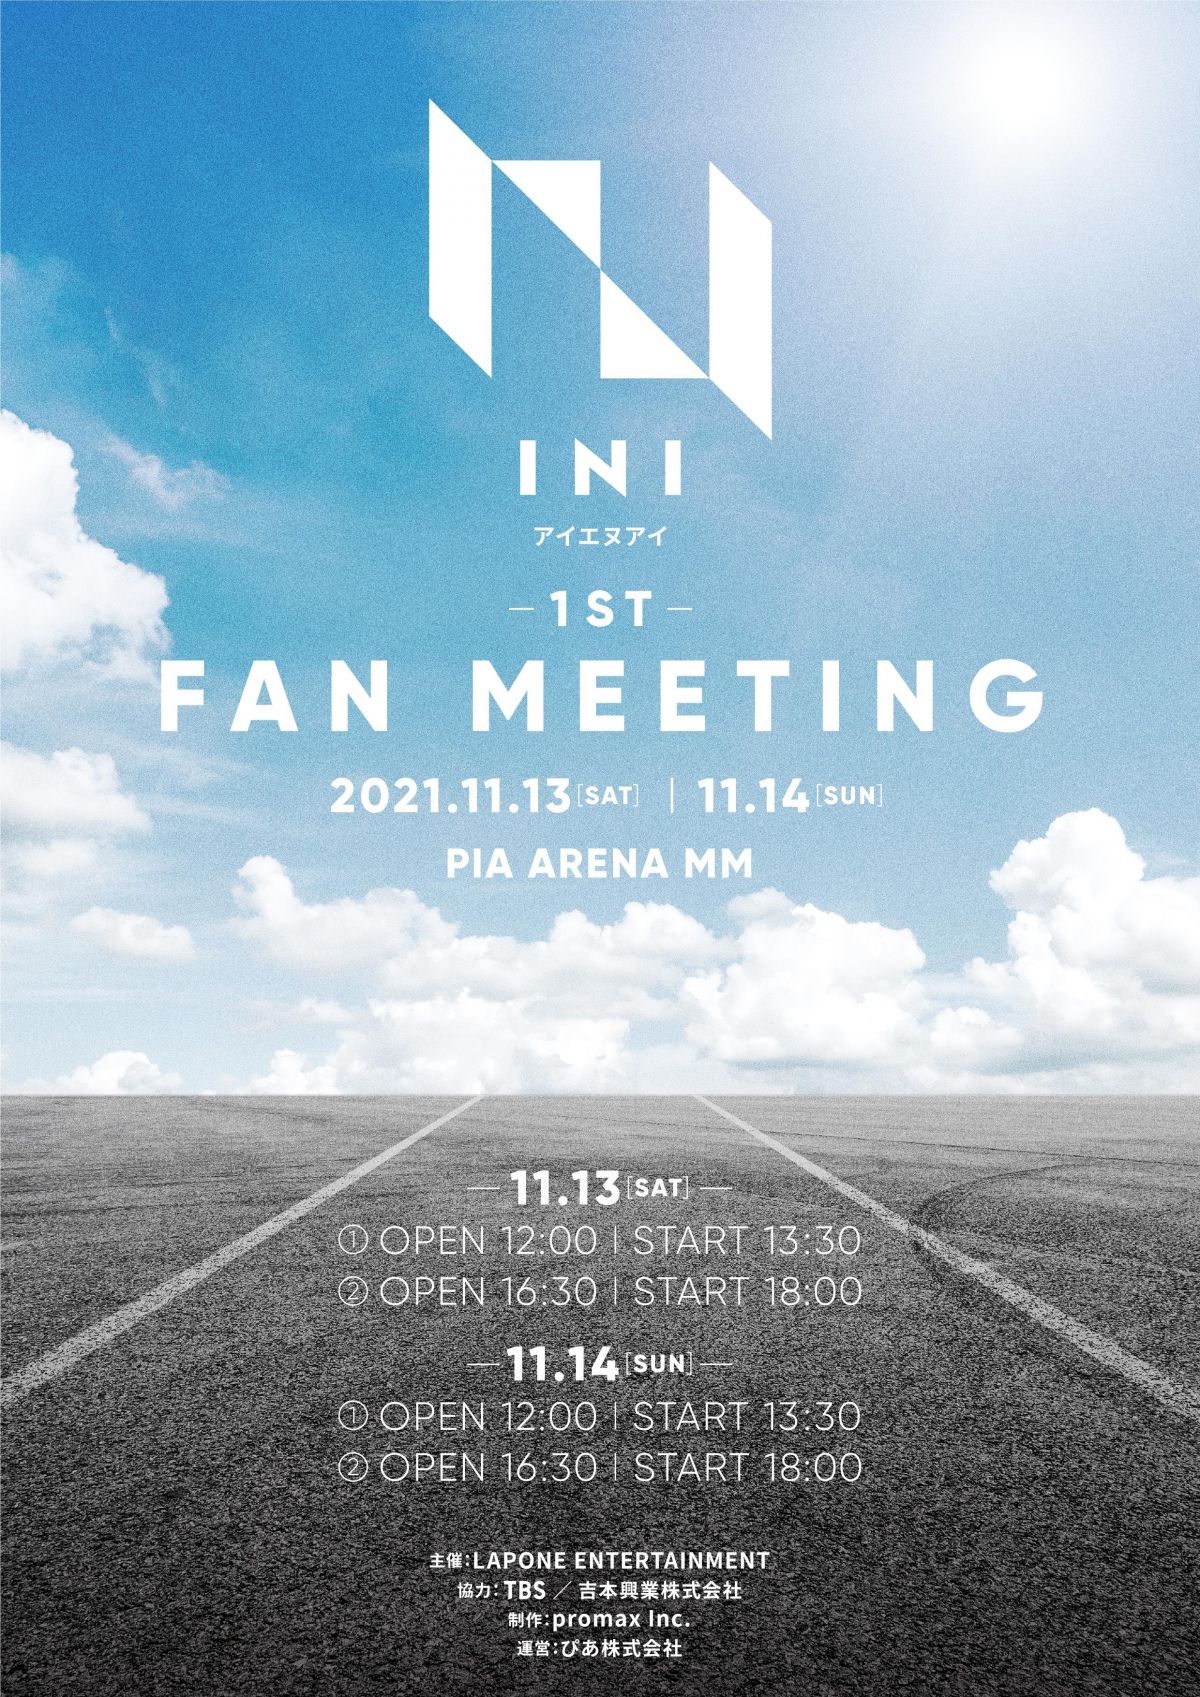 NI初のファンミーティング「INI 1ST FAN MEETING」が開催決定！INI